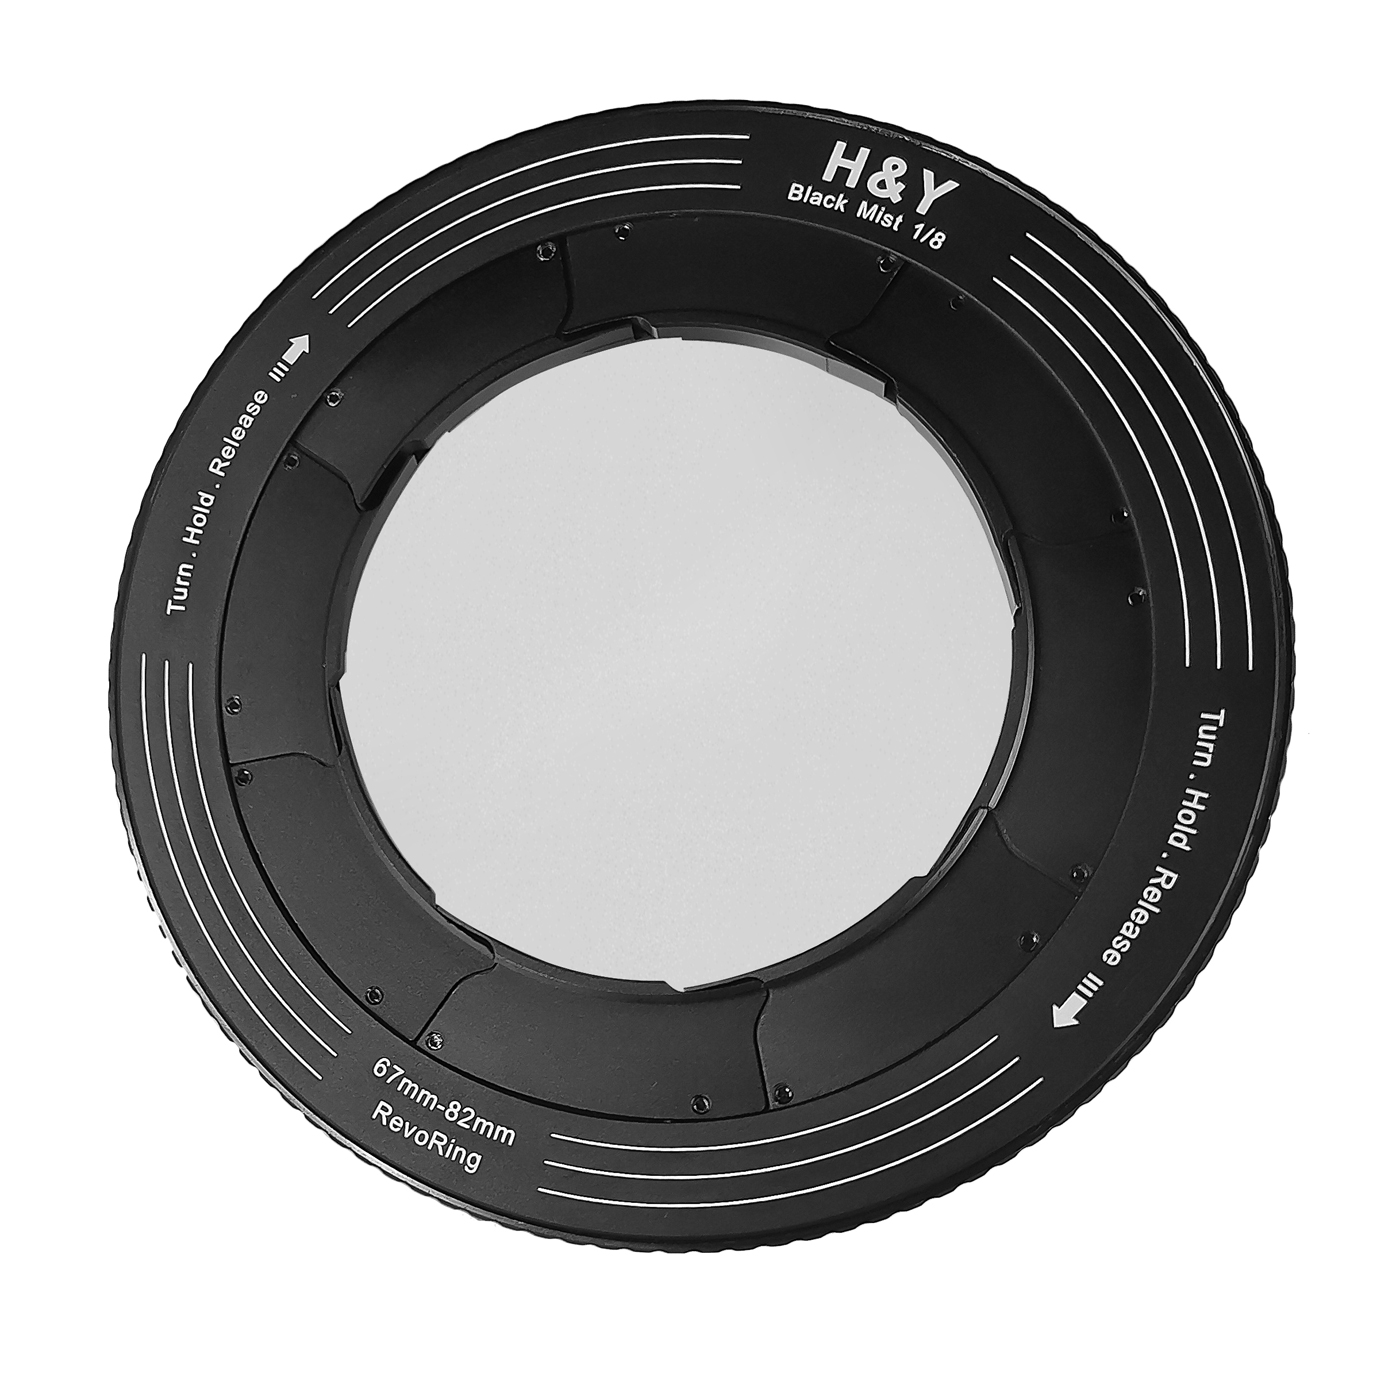 H&Y REVORING 67-82mm Black Mist 1/8 Filter Bild 02